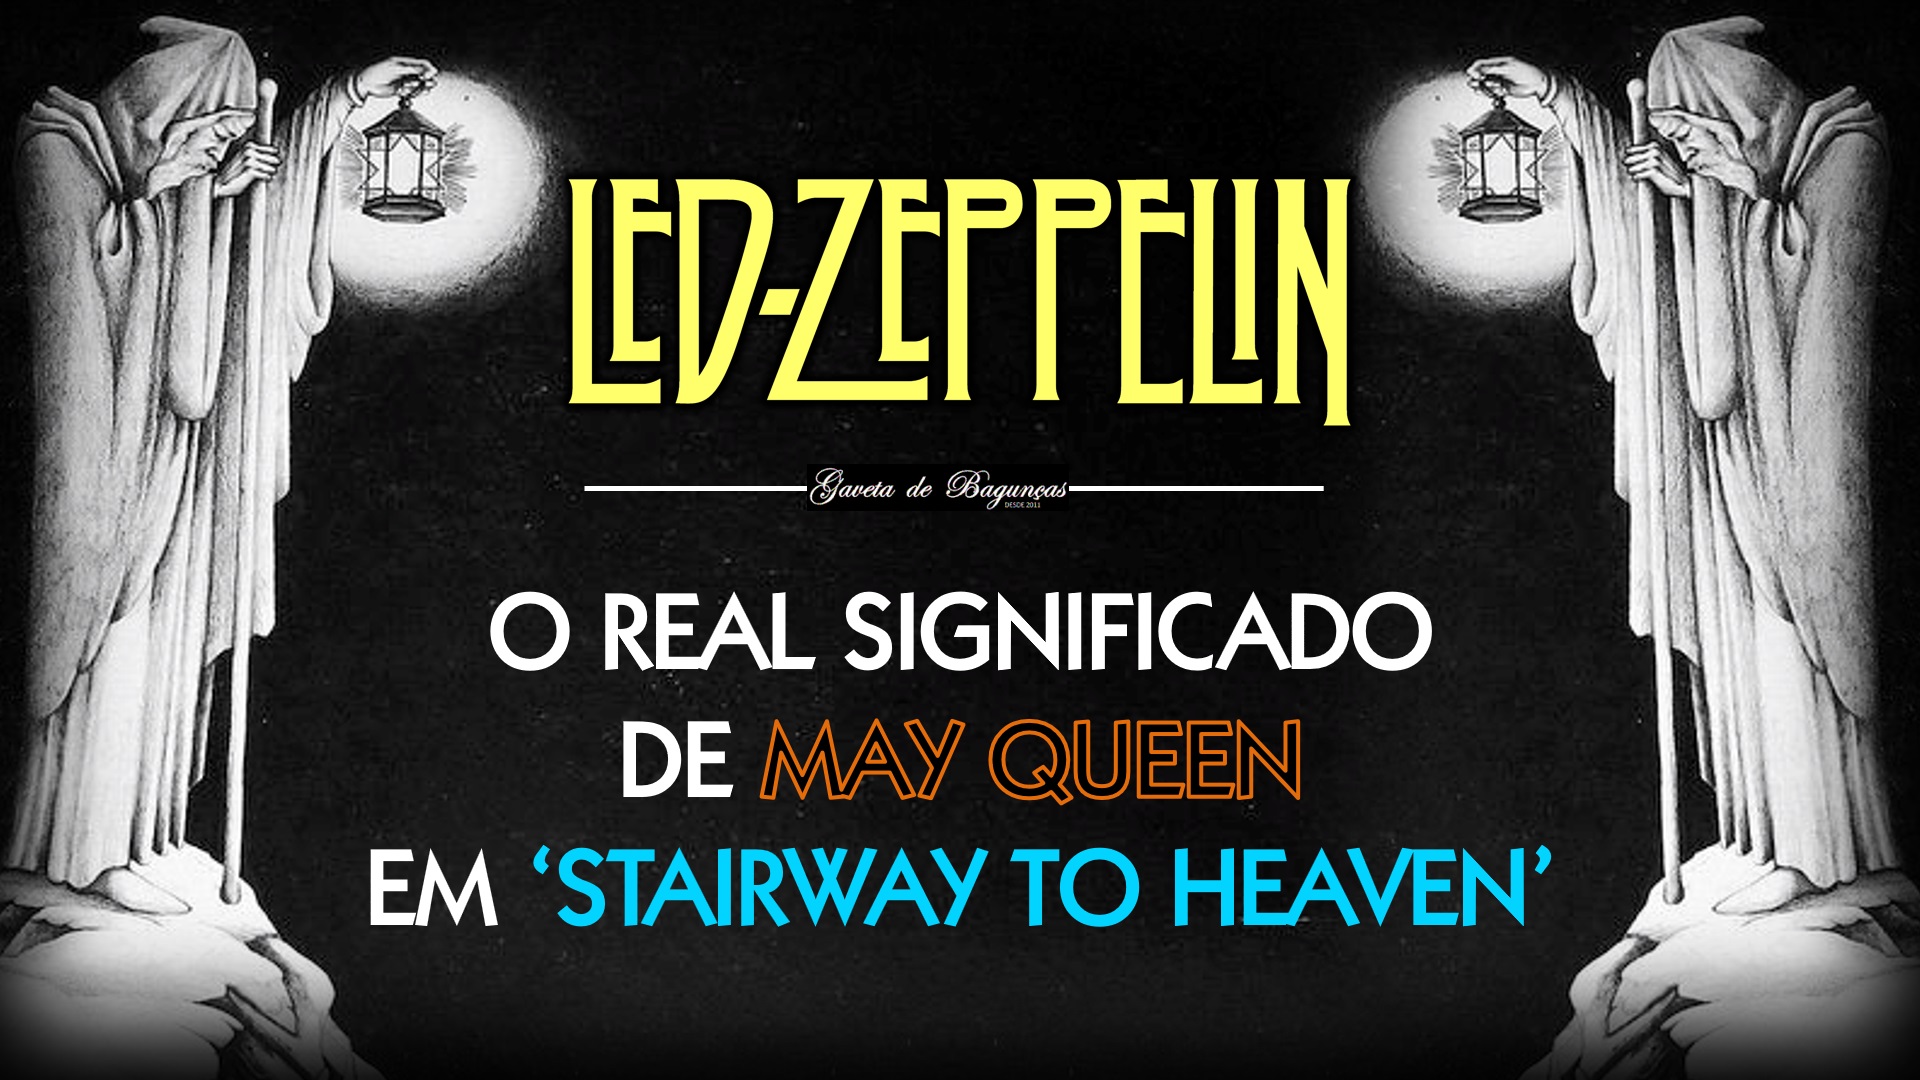 Descubra o simbolismo misterioso de "May Queen", passagem da letra do de "Stairway to Heaven", do Led Zeppelin, e aprecie mais profundamente esta obra-prima do classic rock.